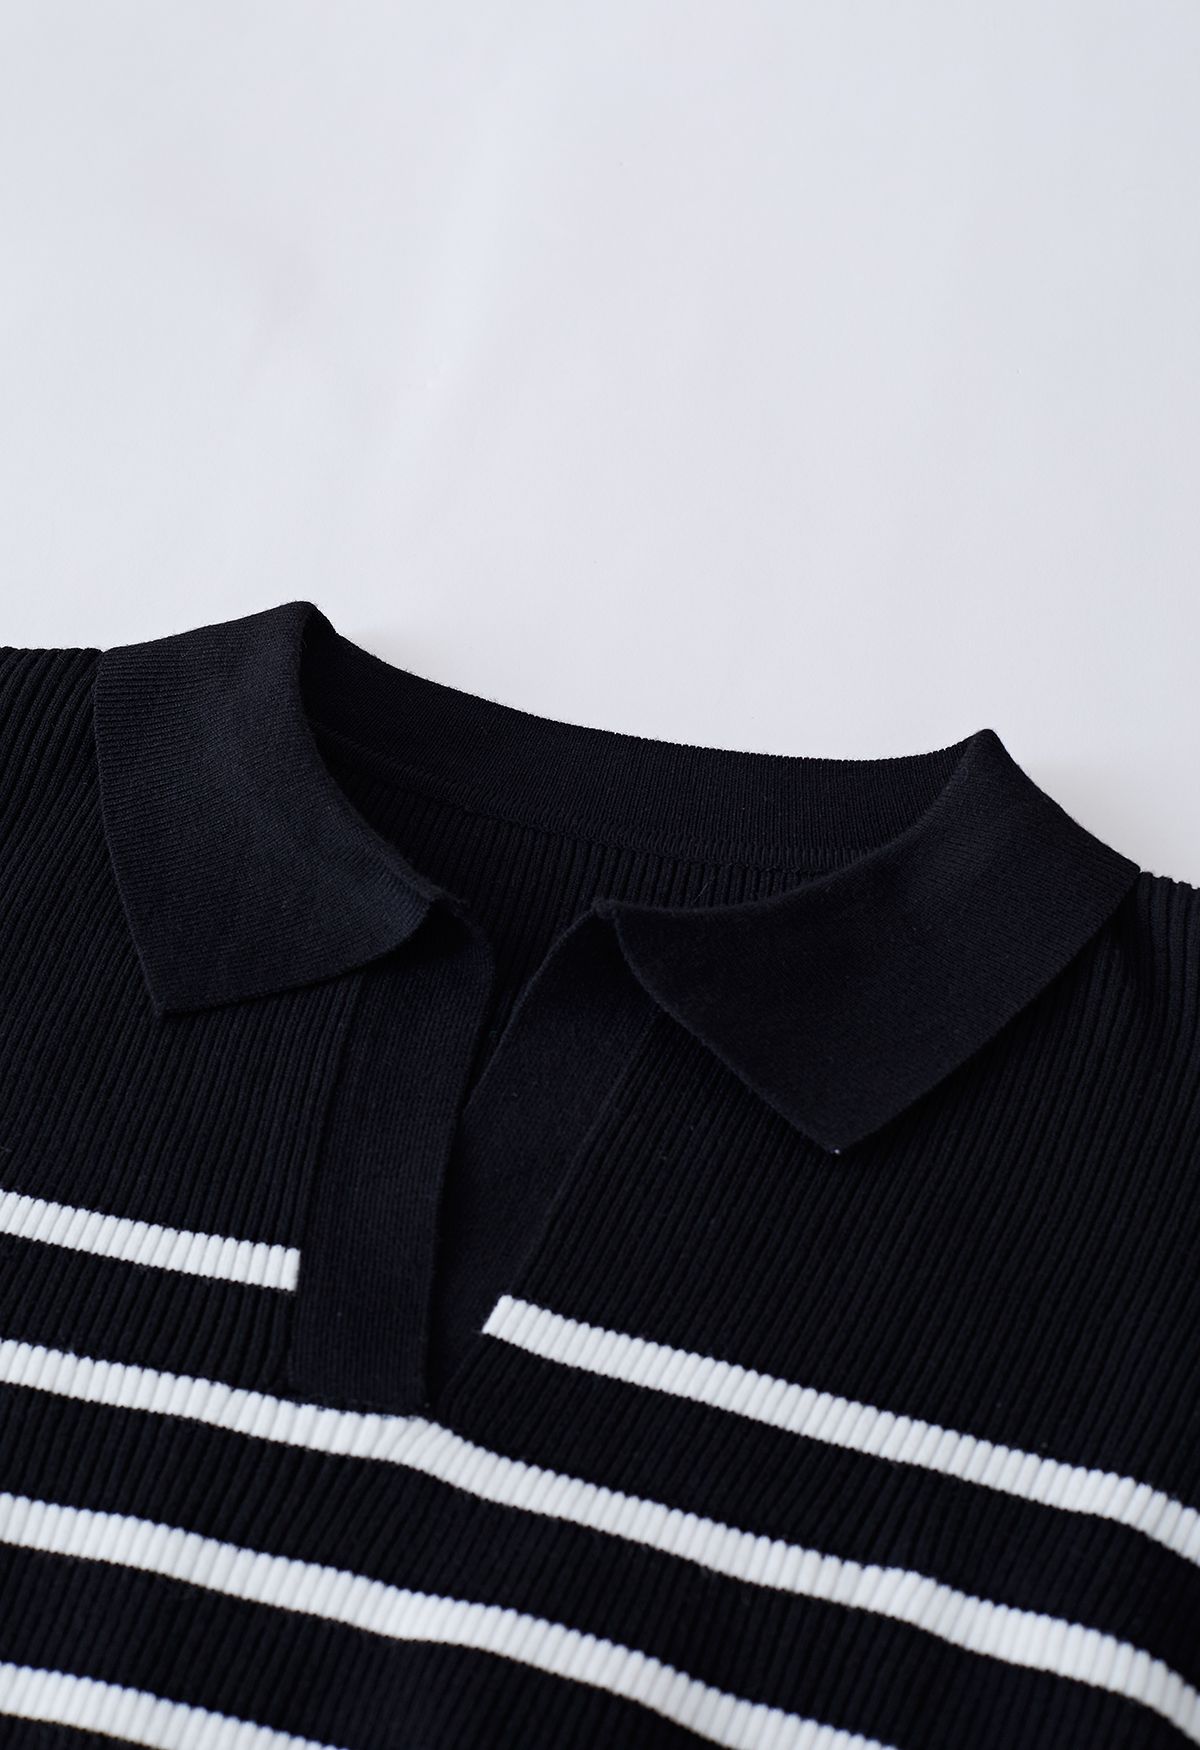 Stripe Knit Spliced Hi-Lo Shirt in Black